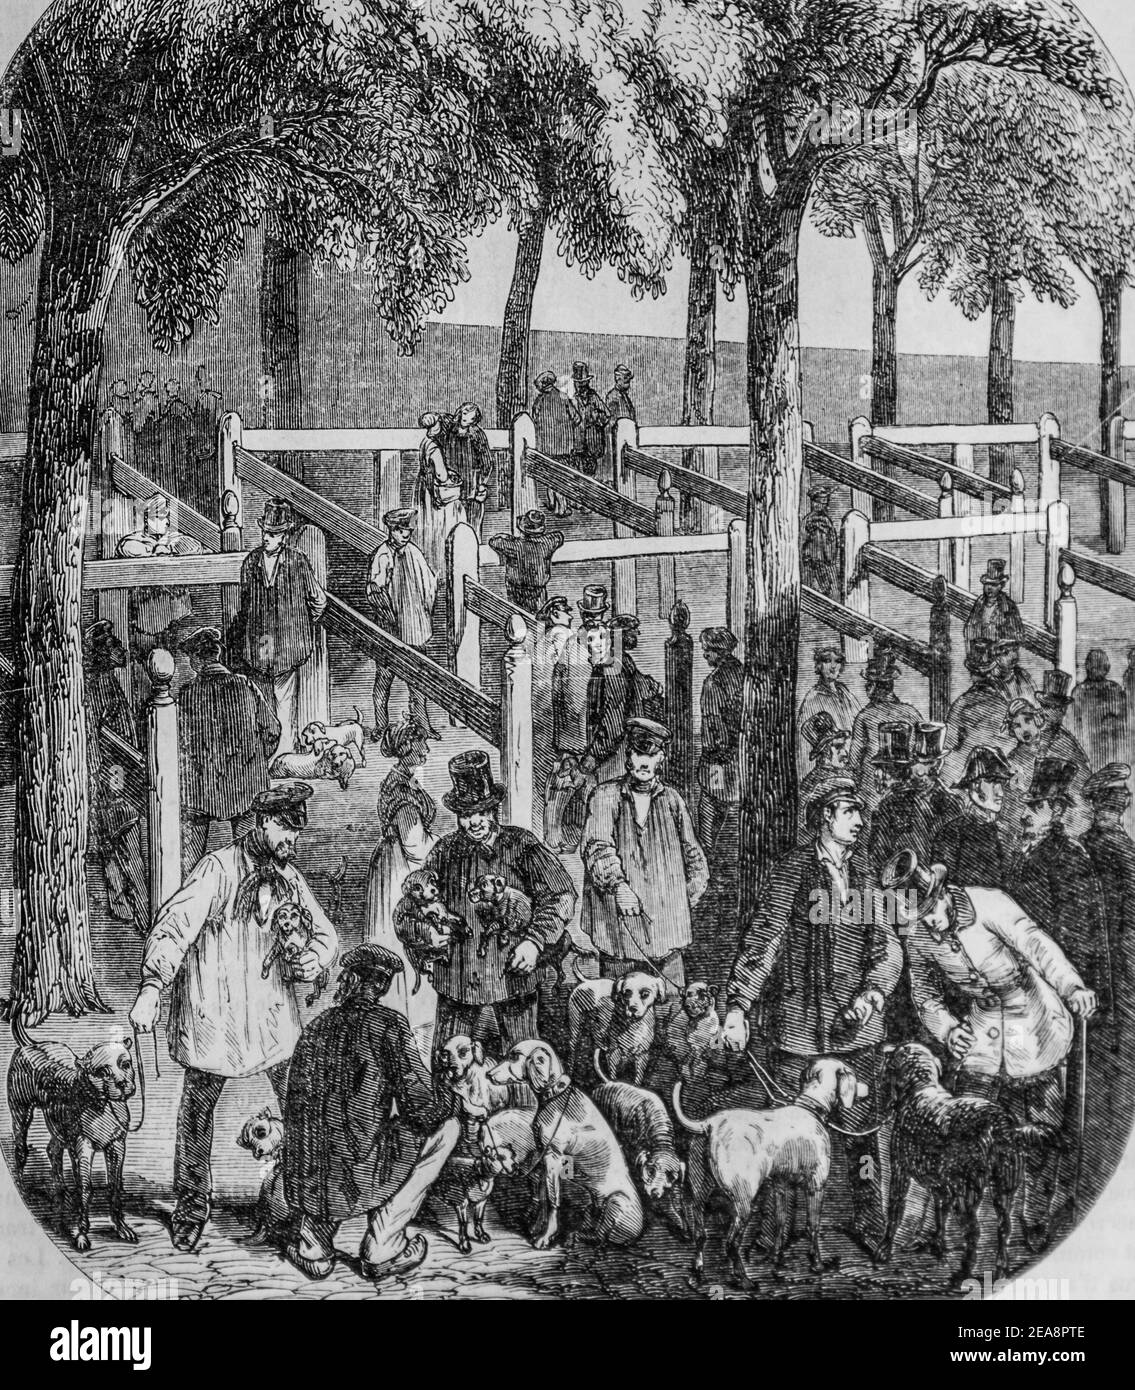 le marché aux chiens, tableau de paris par edmond texier, éditeur paulin et le chevalier 1852 Banque D'Images